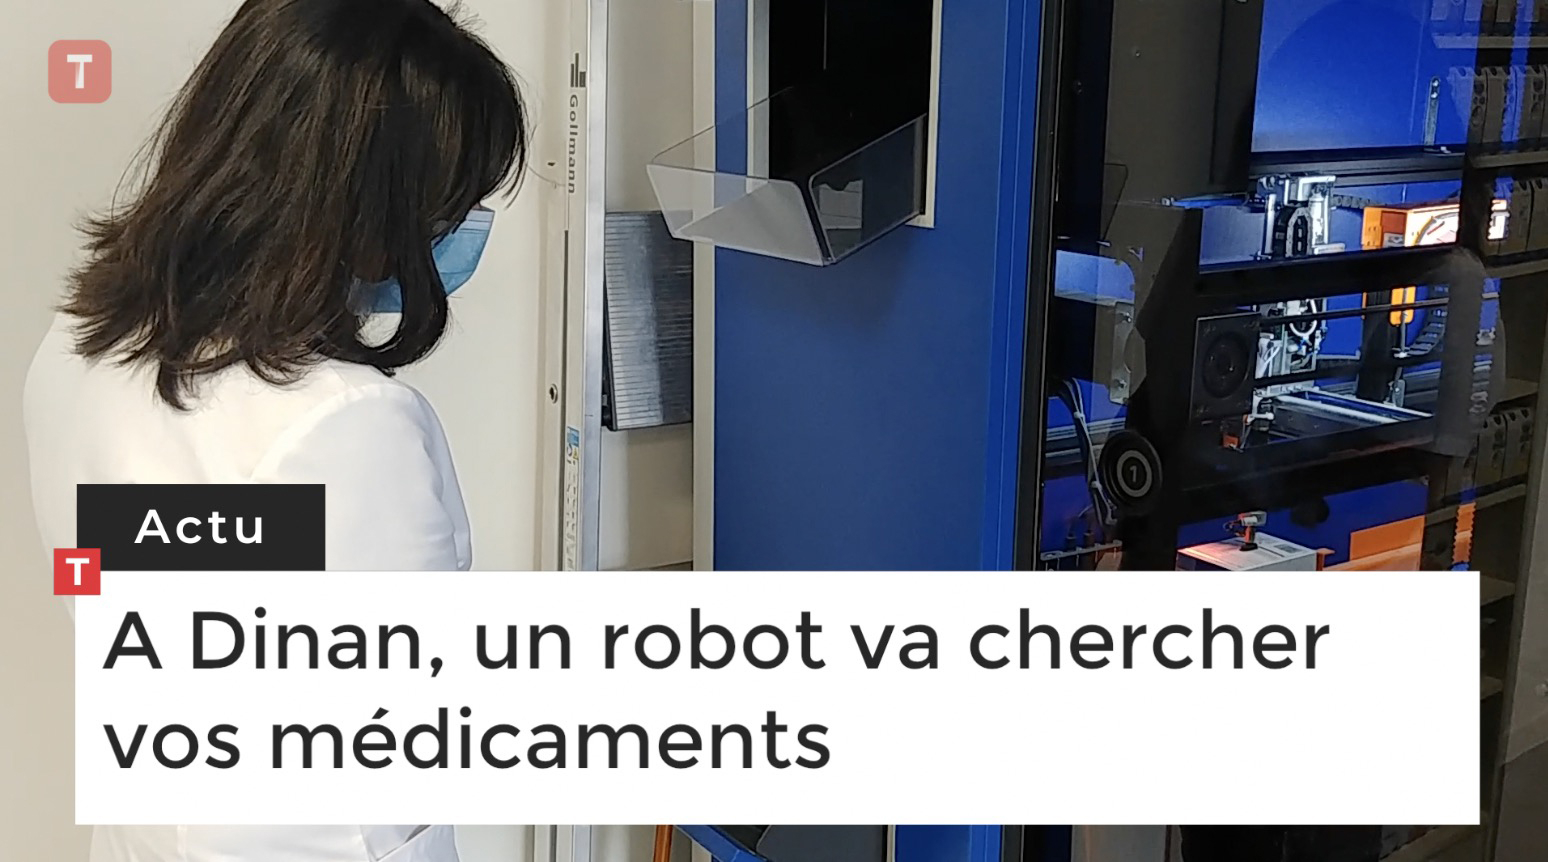  A Dinan, un robot va chercher vos médicaments (Le Télégramme)